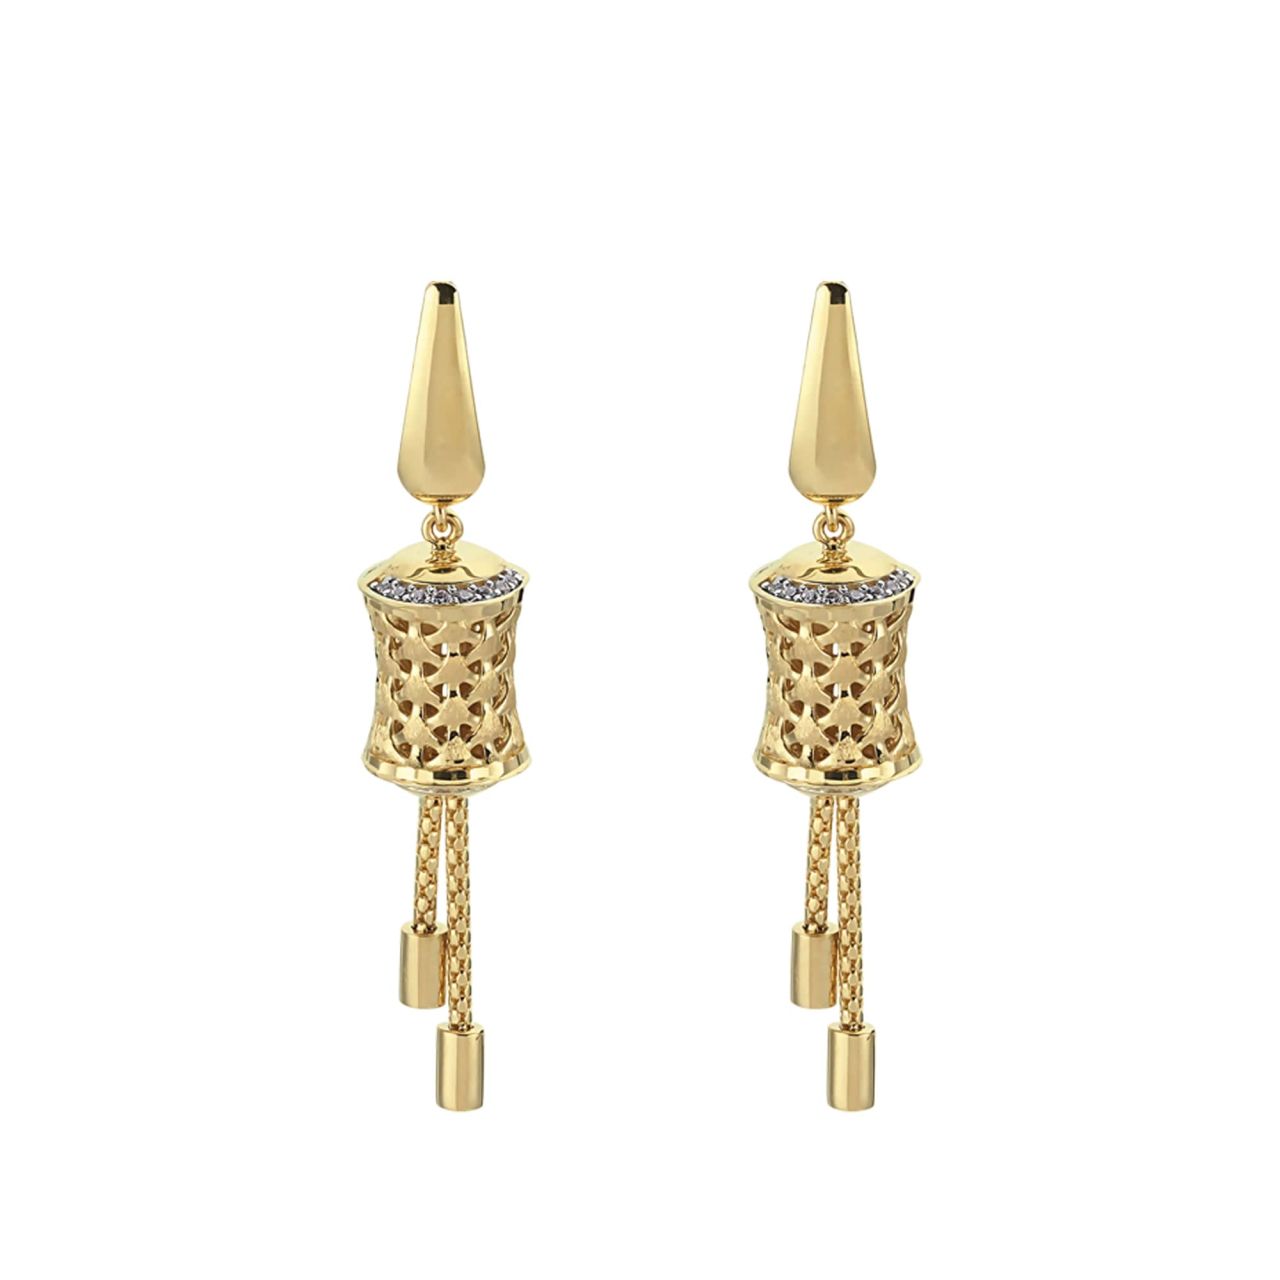 TS 2033 is 8.70g Gold Earrings